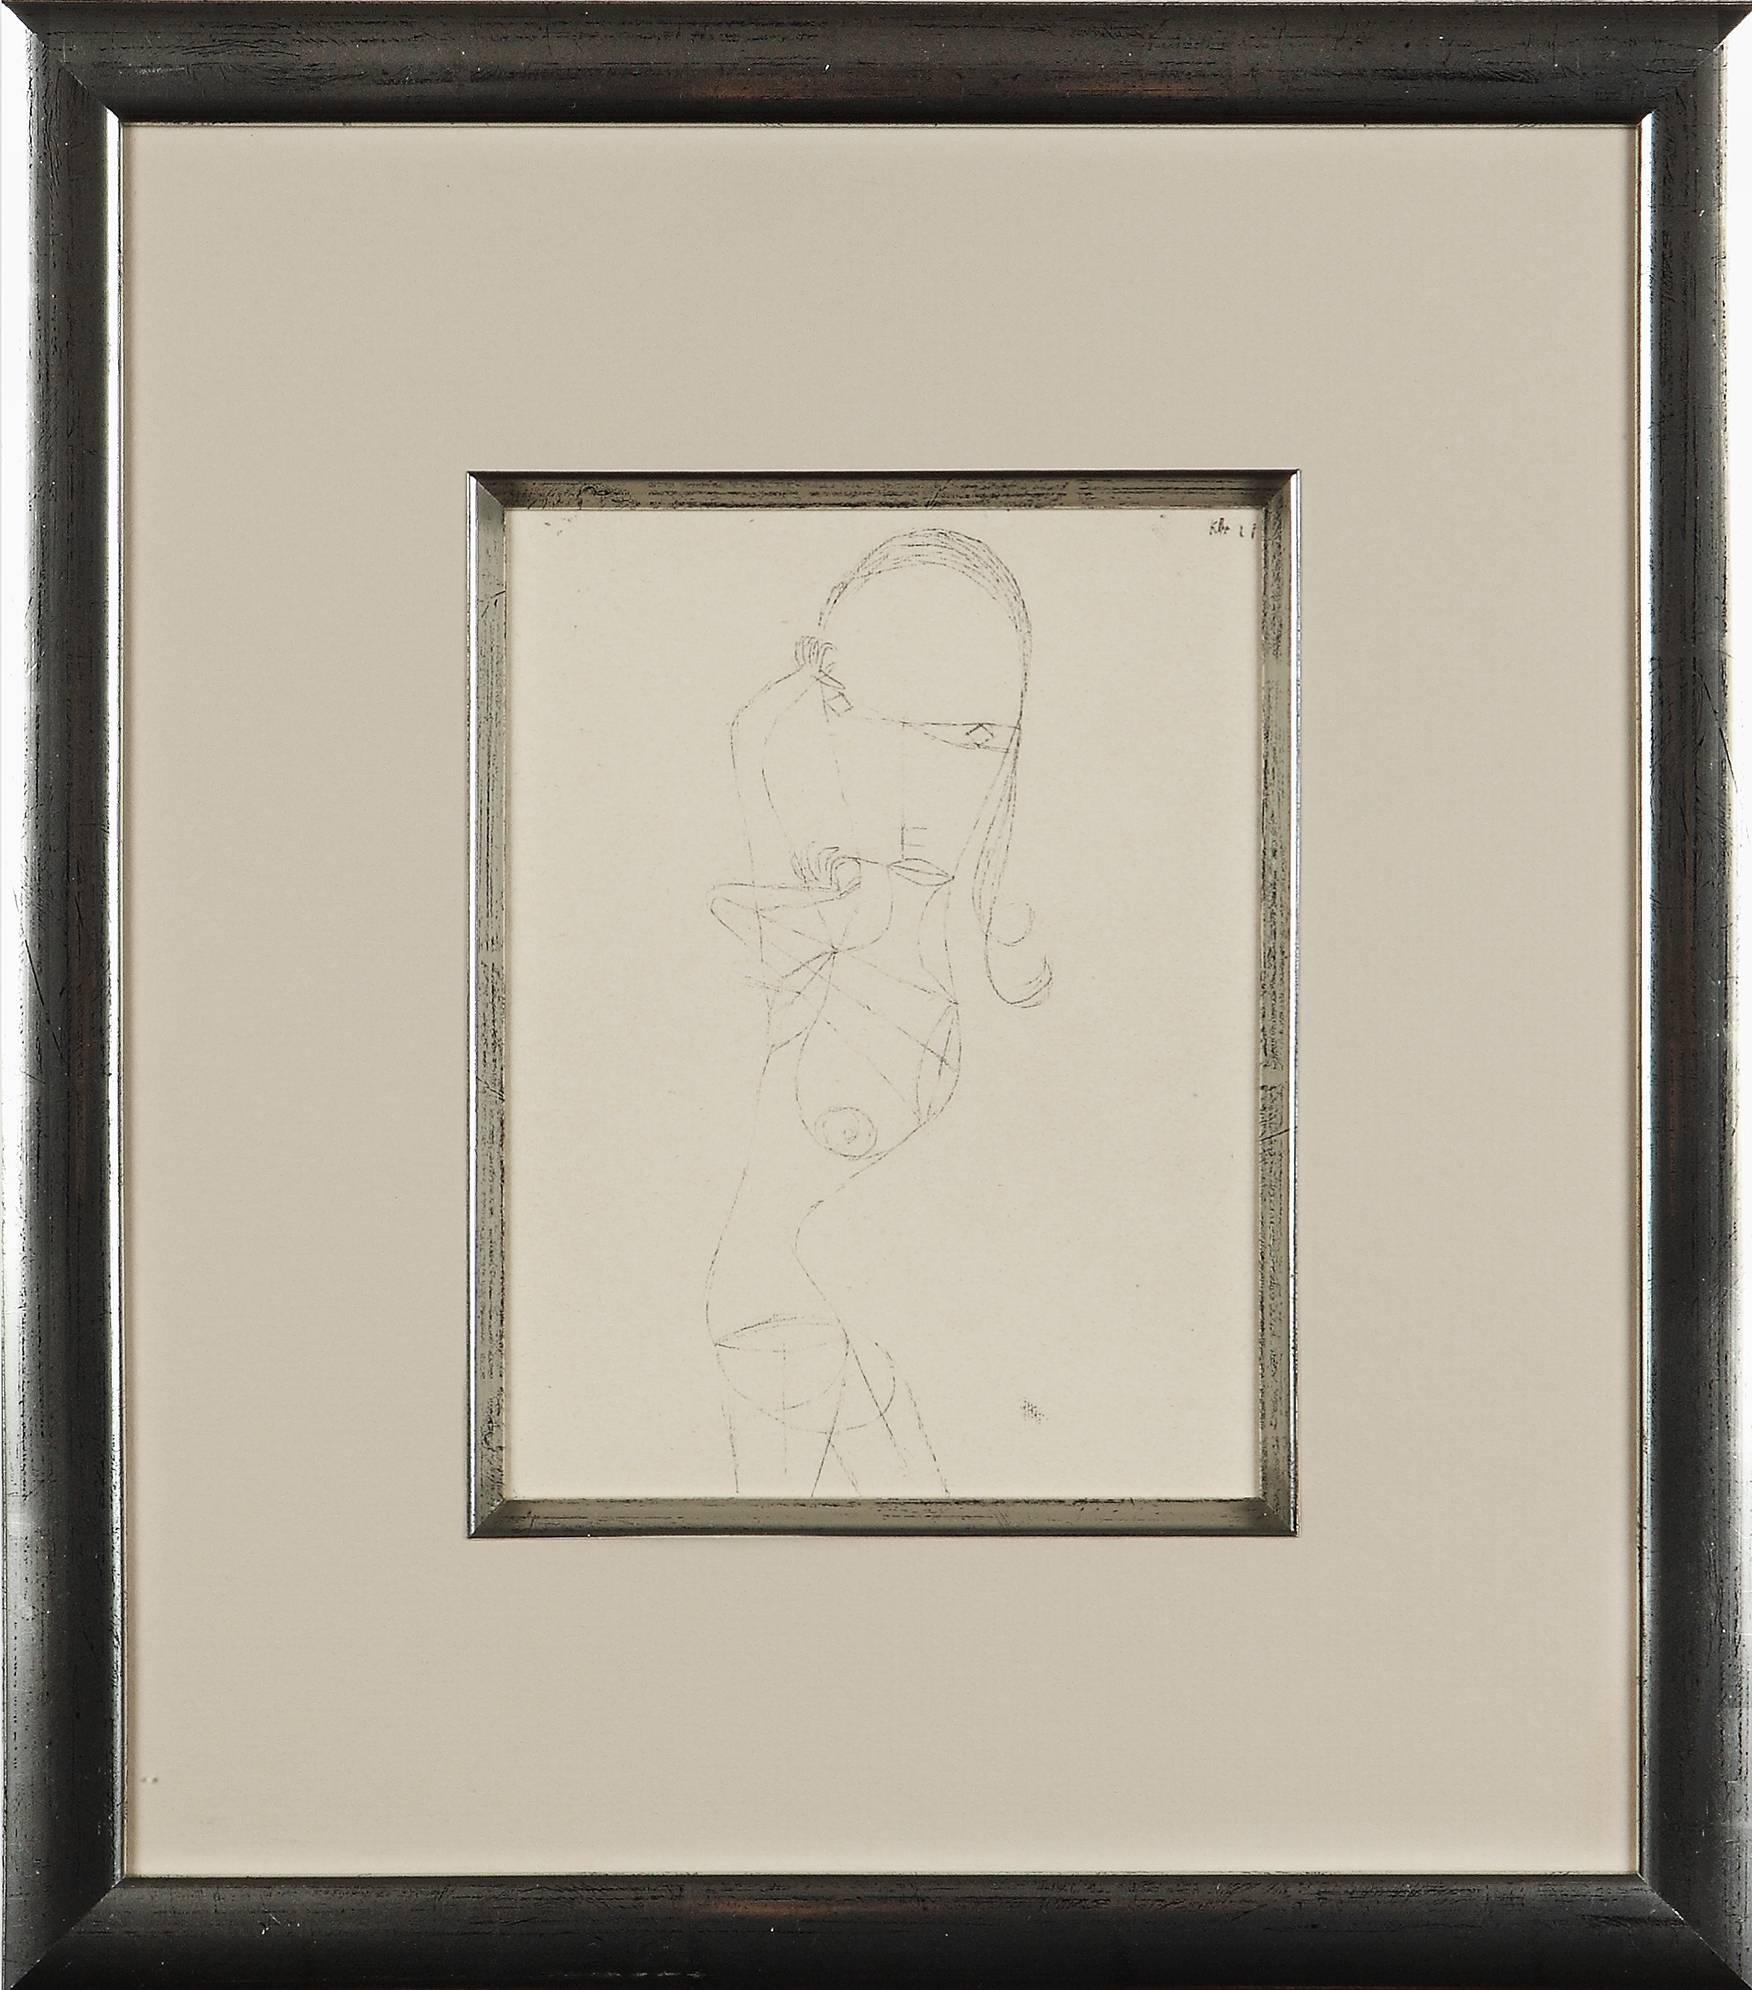 Paul Klee Etching "Nackte Frau"